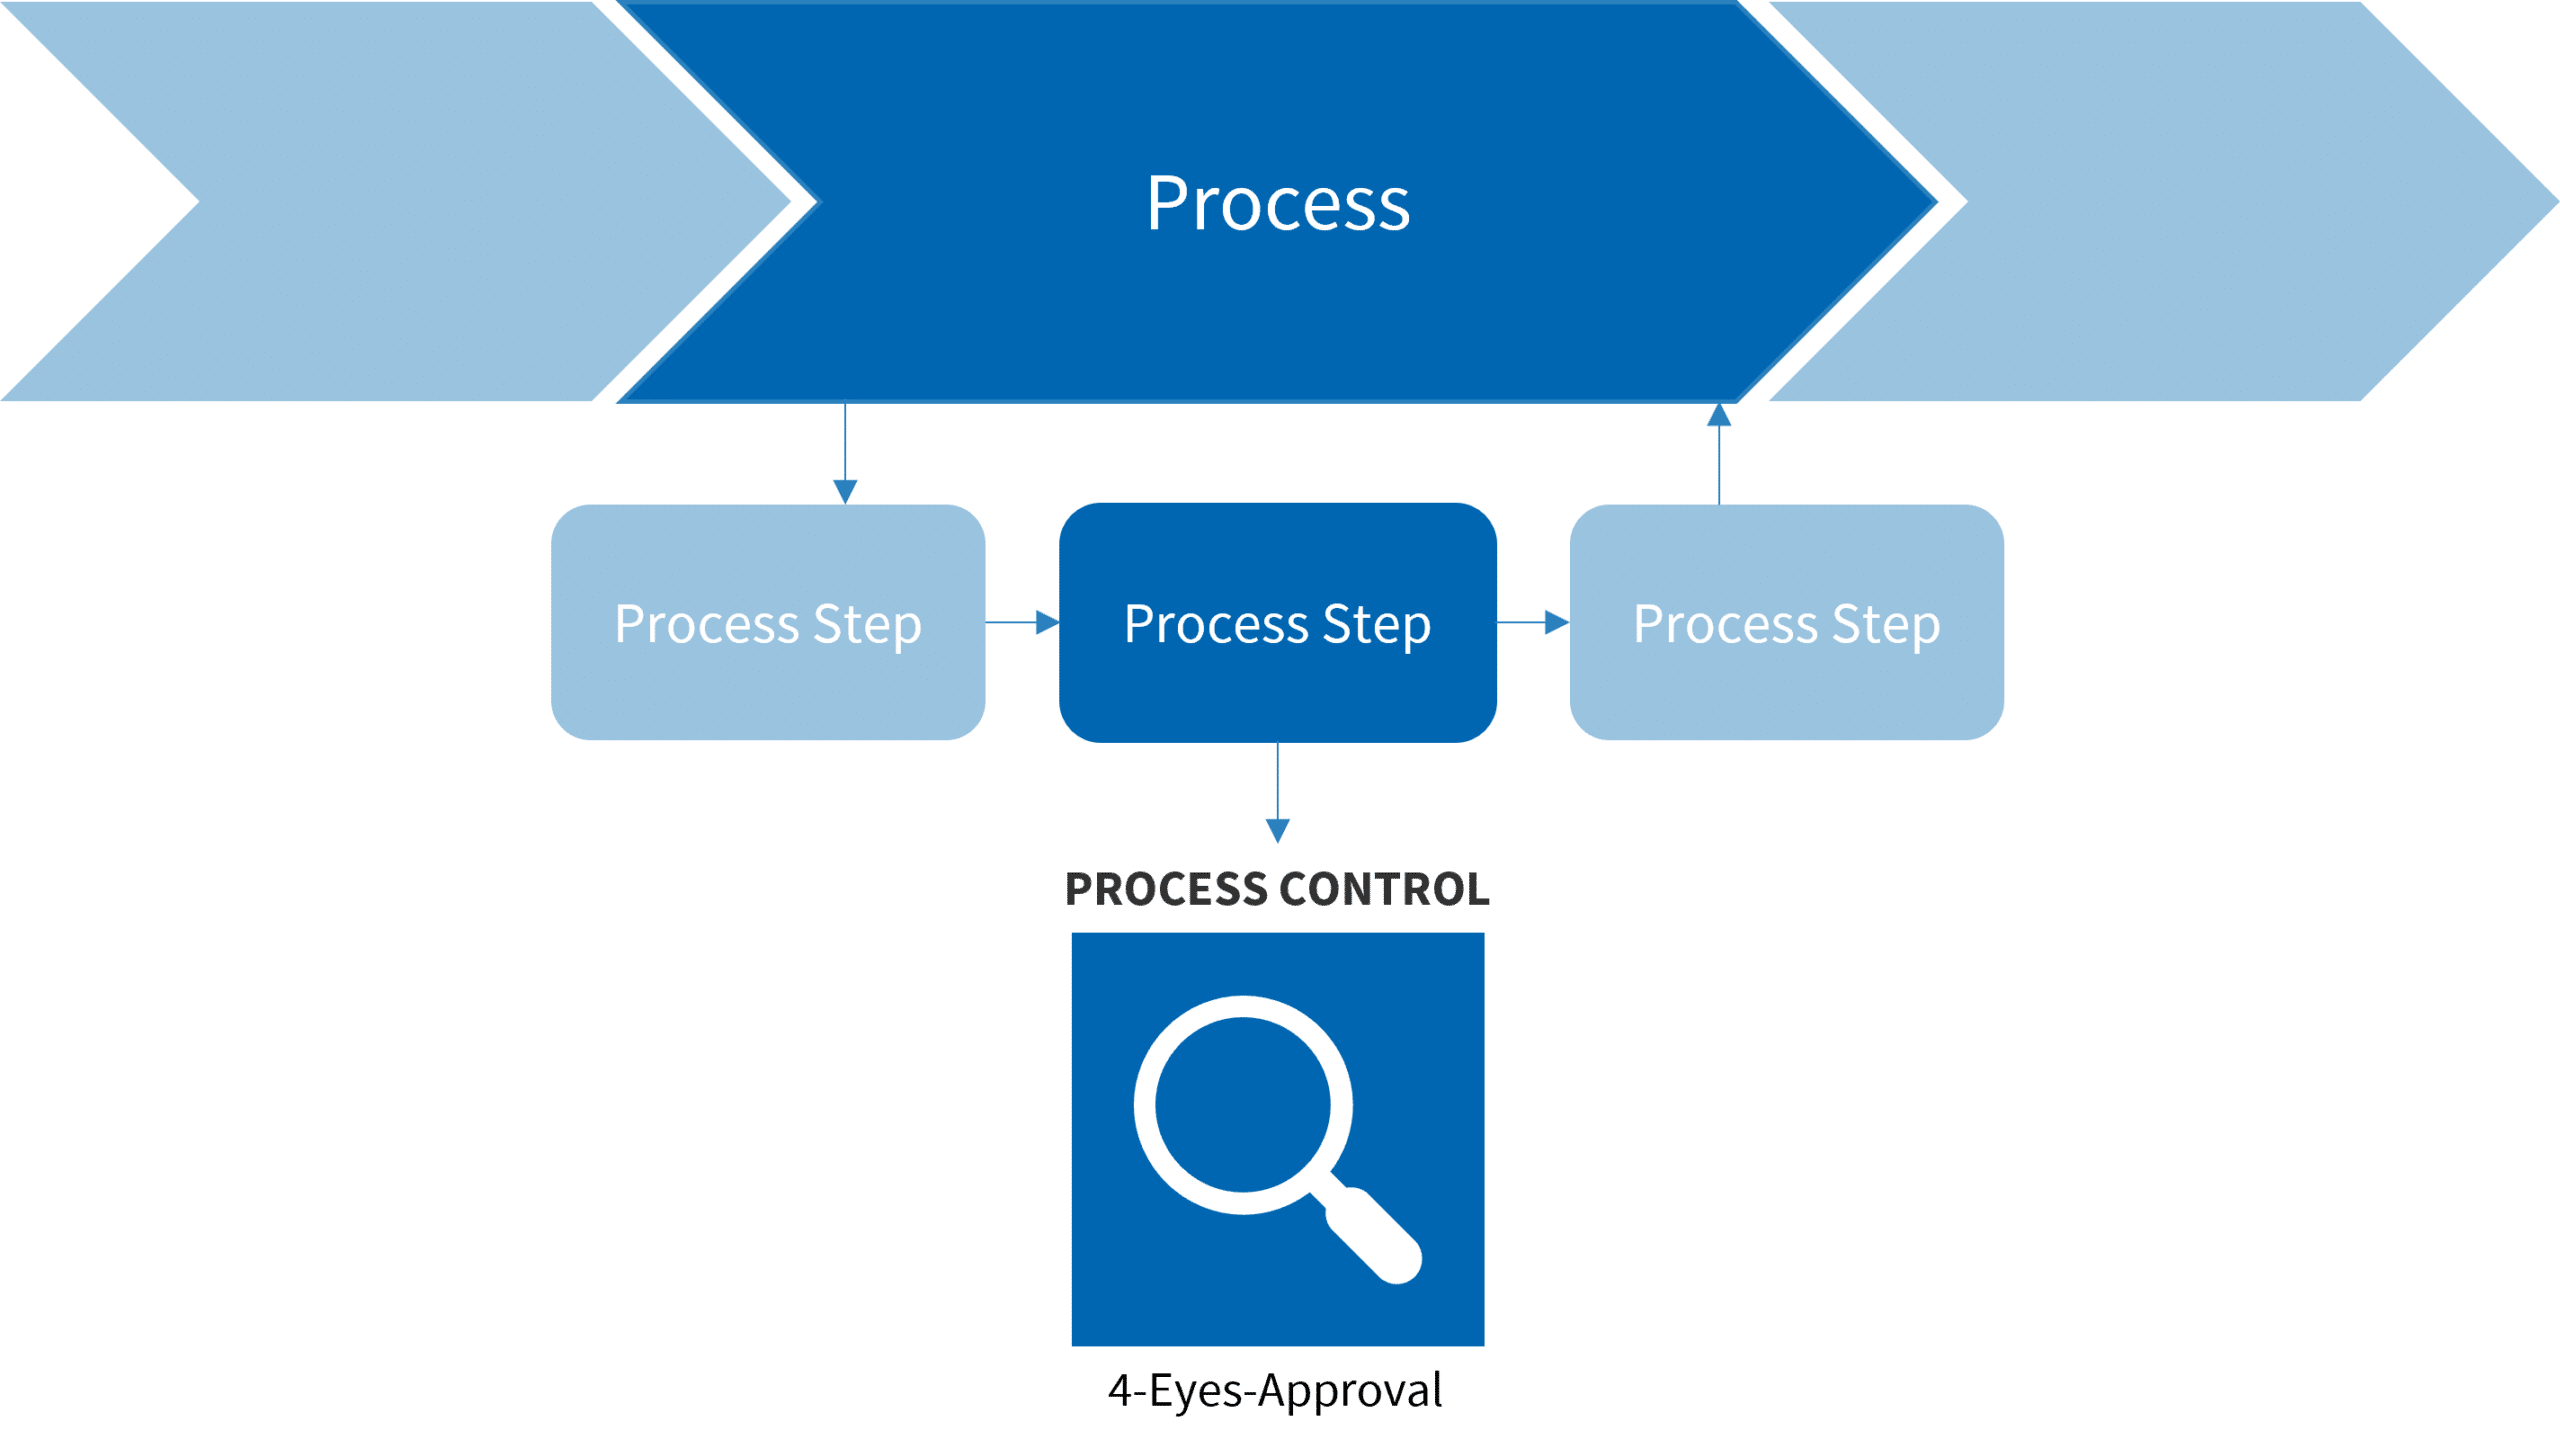 Abbildung 1: Operative Kontrollen zur Sicherstellung von Prozessschritten